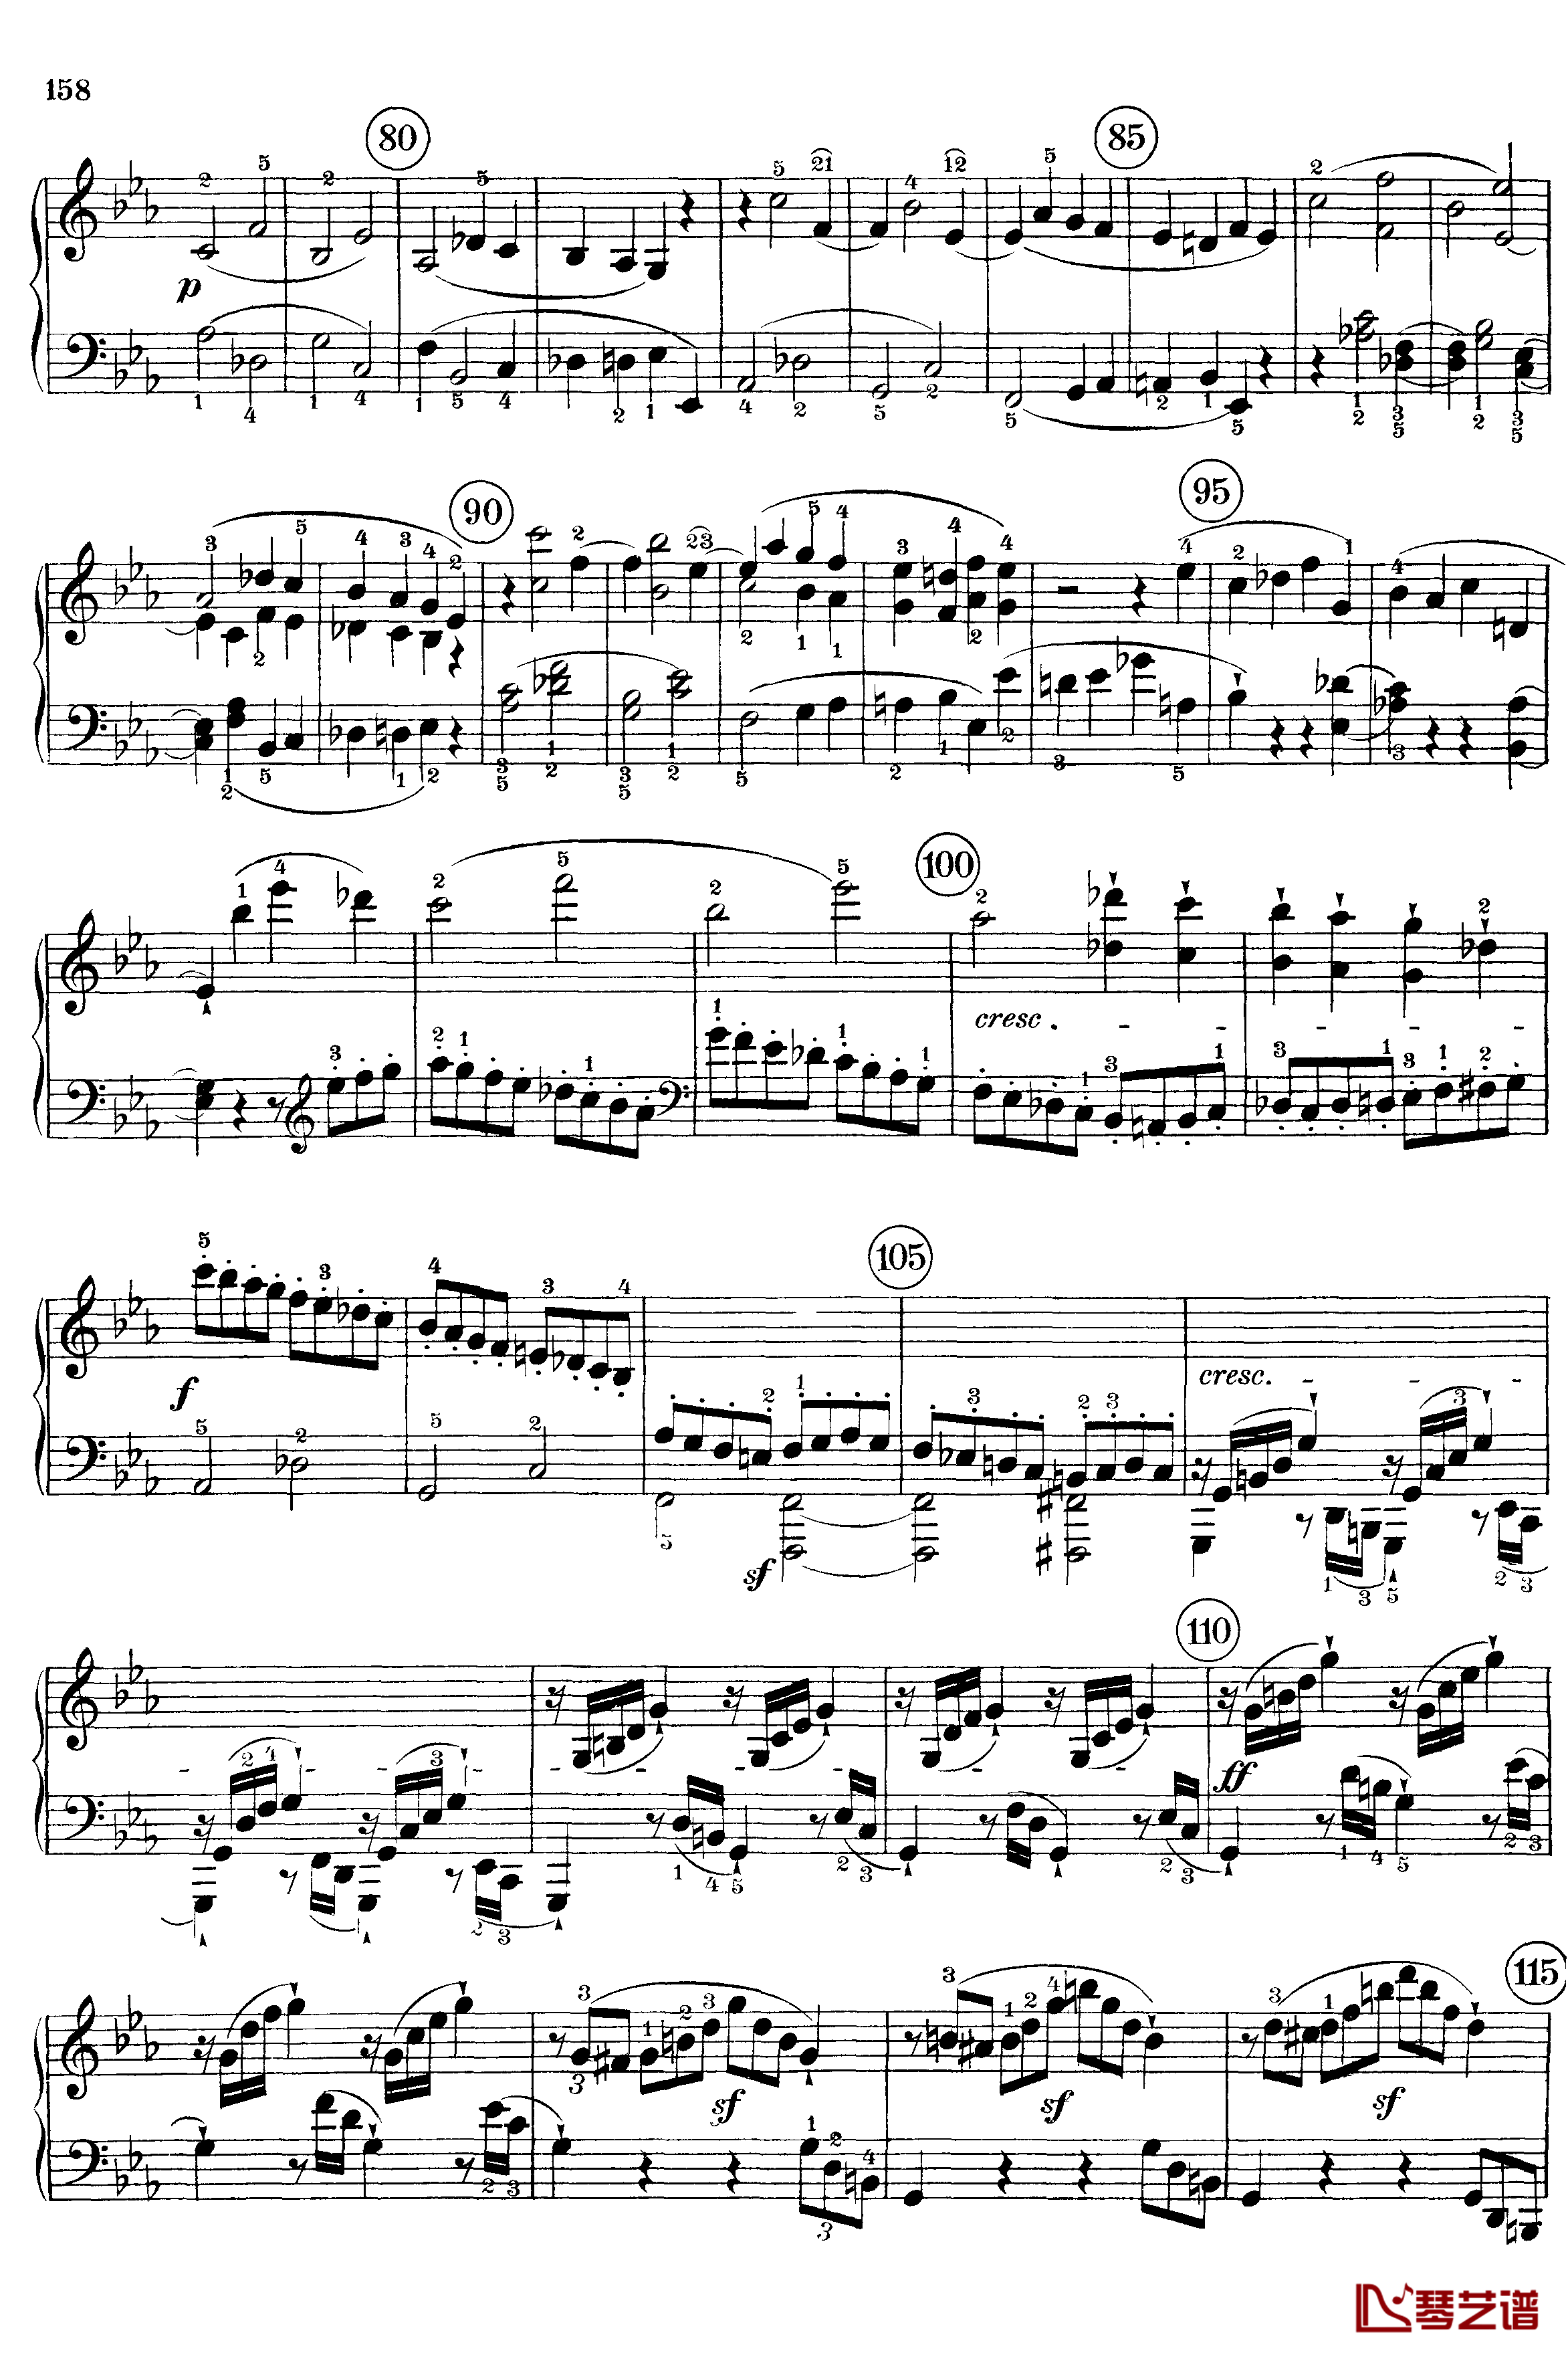 悲怆钢琴谱-c小调第八号钢琴奏鸣曲-全乐章-带指法版-贝多芬-beethoven16